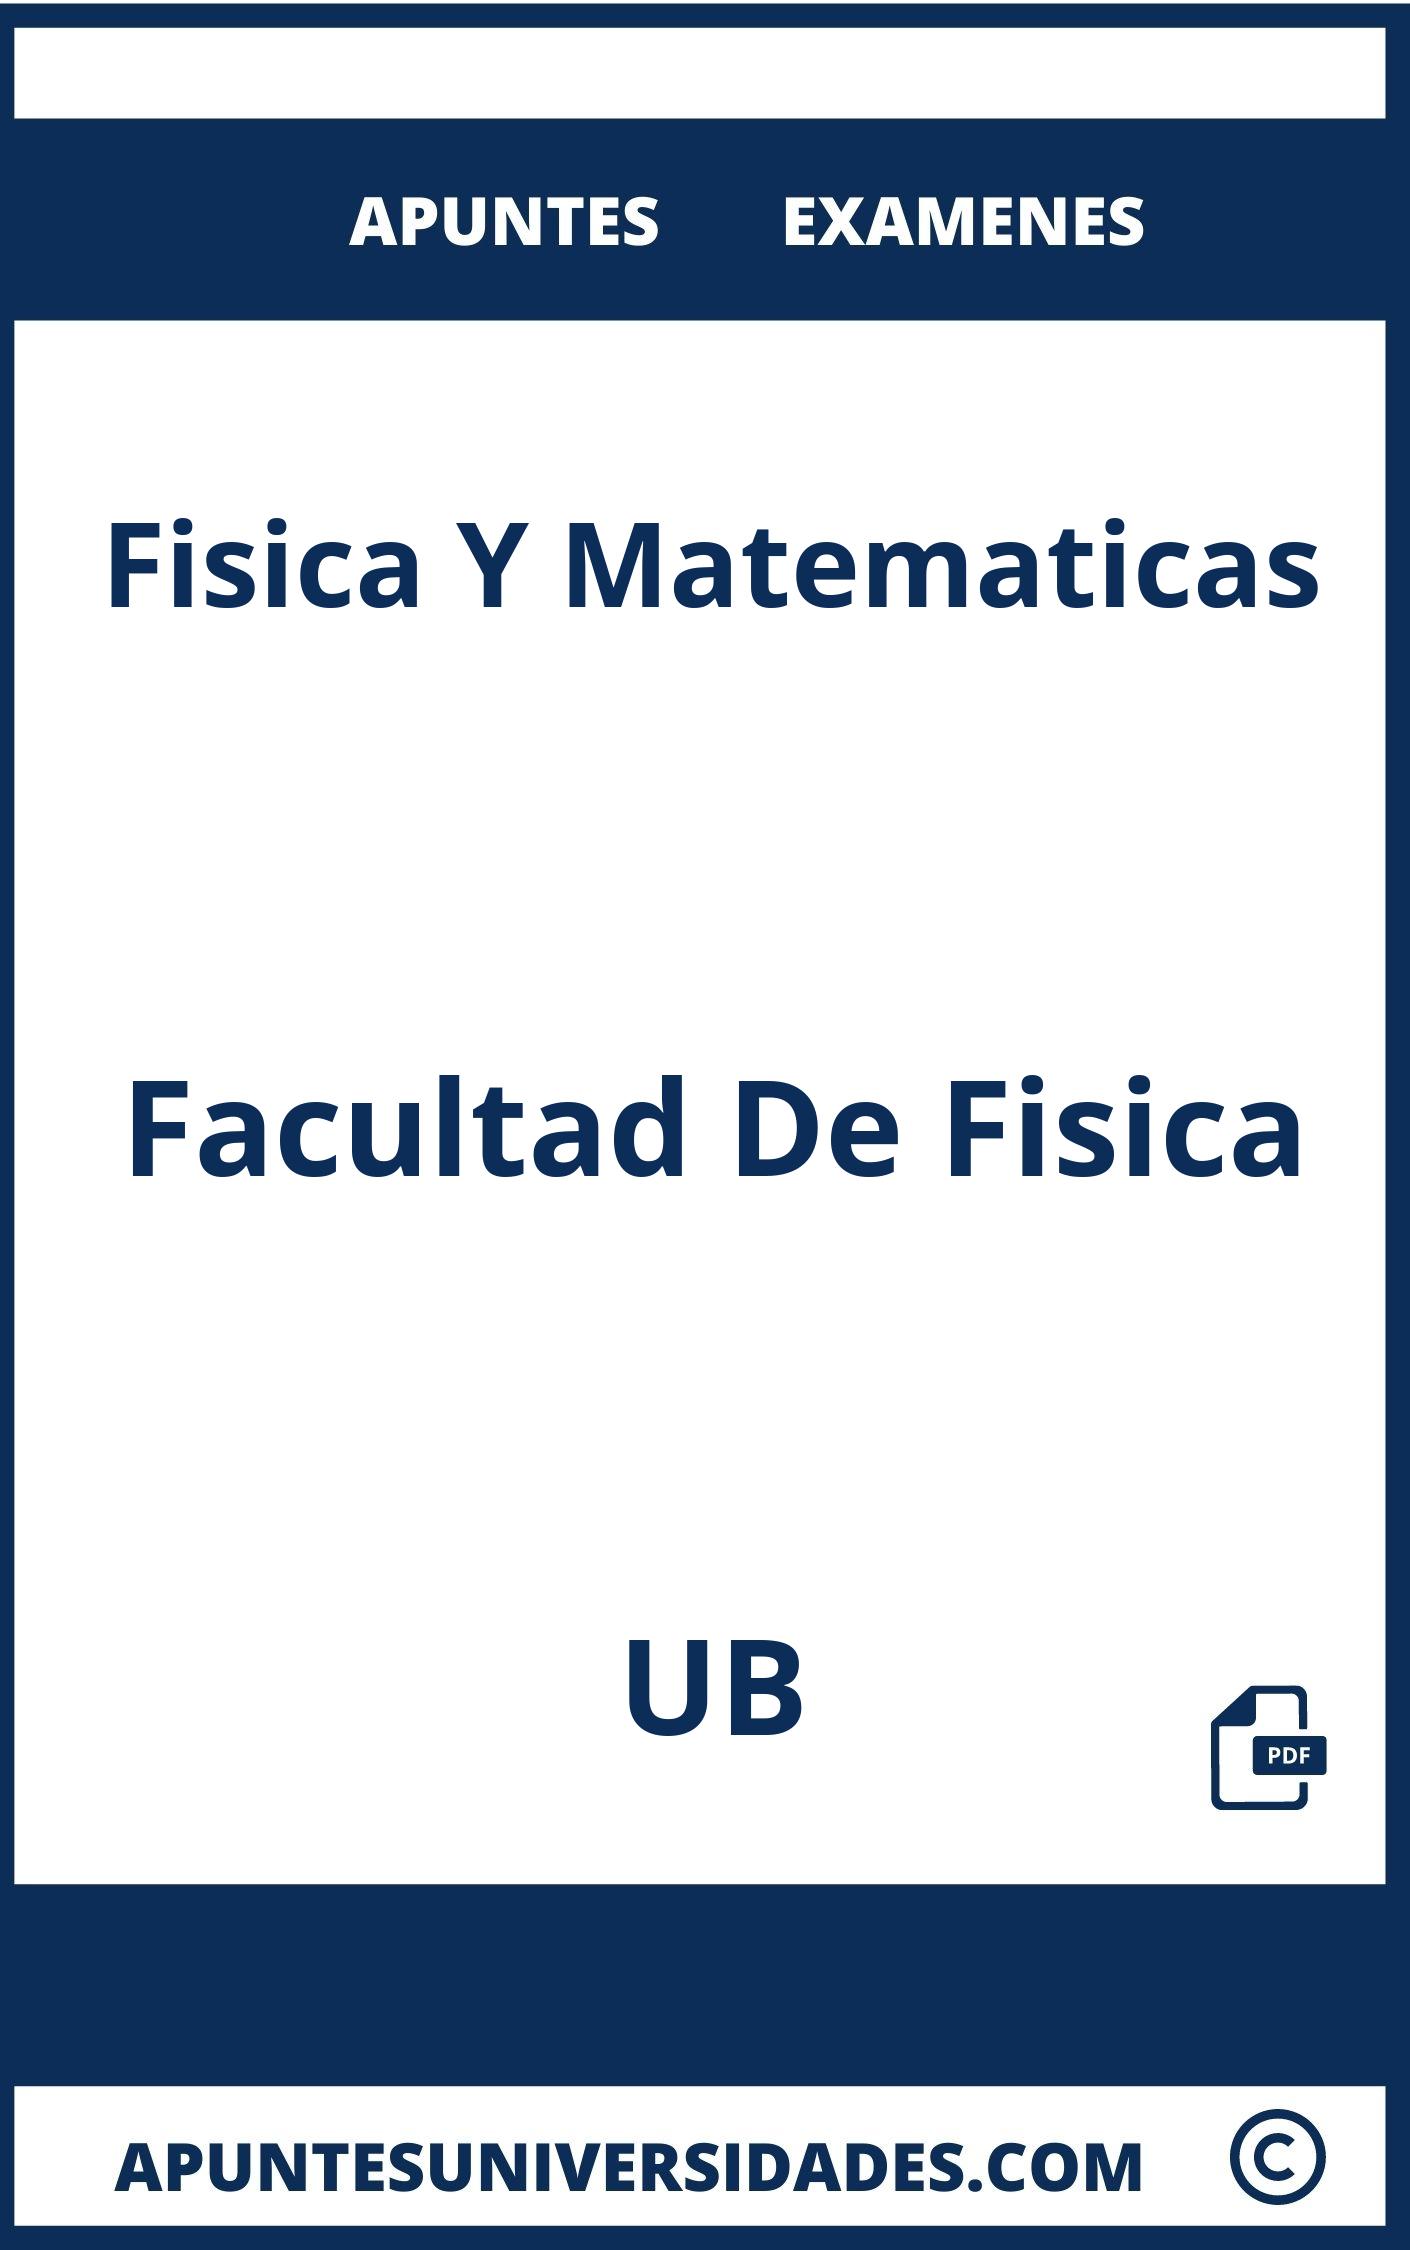 Fisica Y Matematicas UB Examenes Apuntes